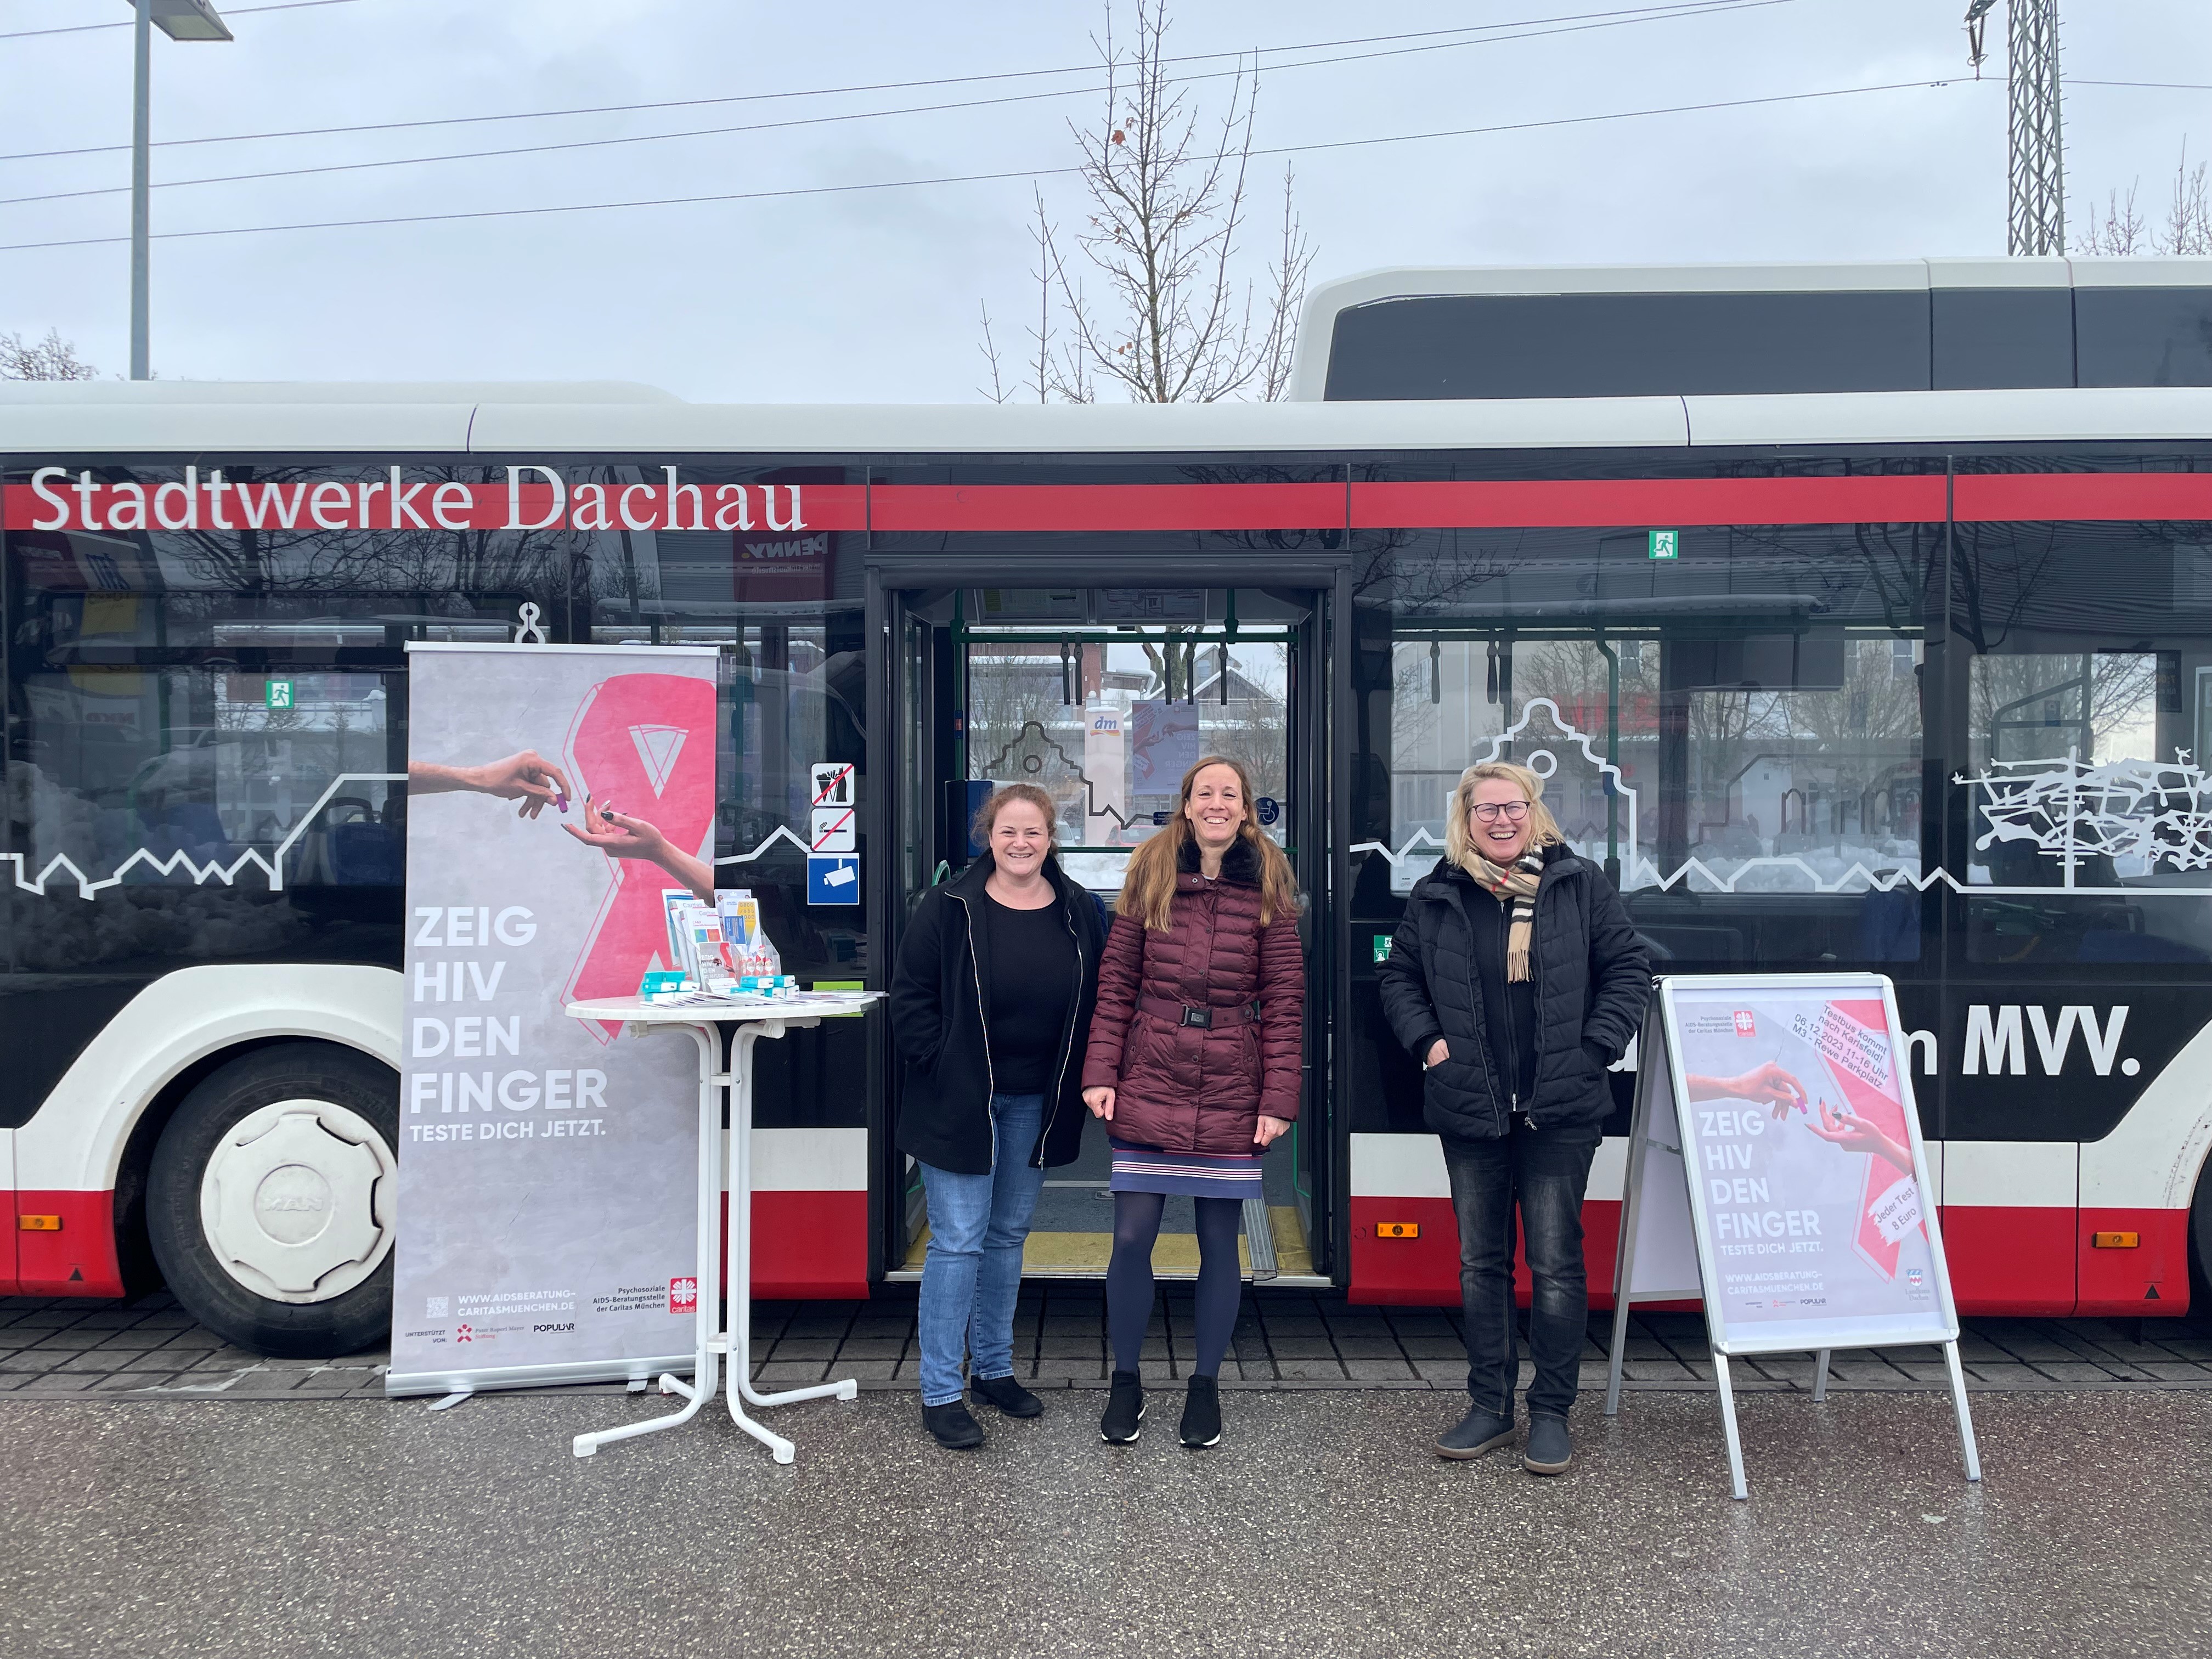 Corinna Klaus, Caritas AIDS-Beratung für Oberbayern, Christina Ritter und Elisabeth Bergemann vom Gesundheitsamt Dachau bei der HIV-Testaktion. Die Stadtwerke Dachau stellten kurzfristig einen Bus zur Verfügung.